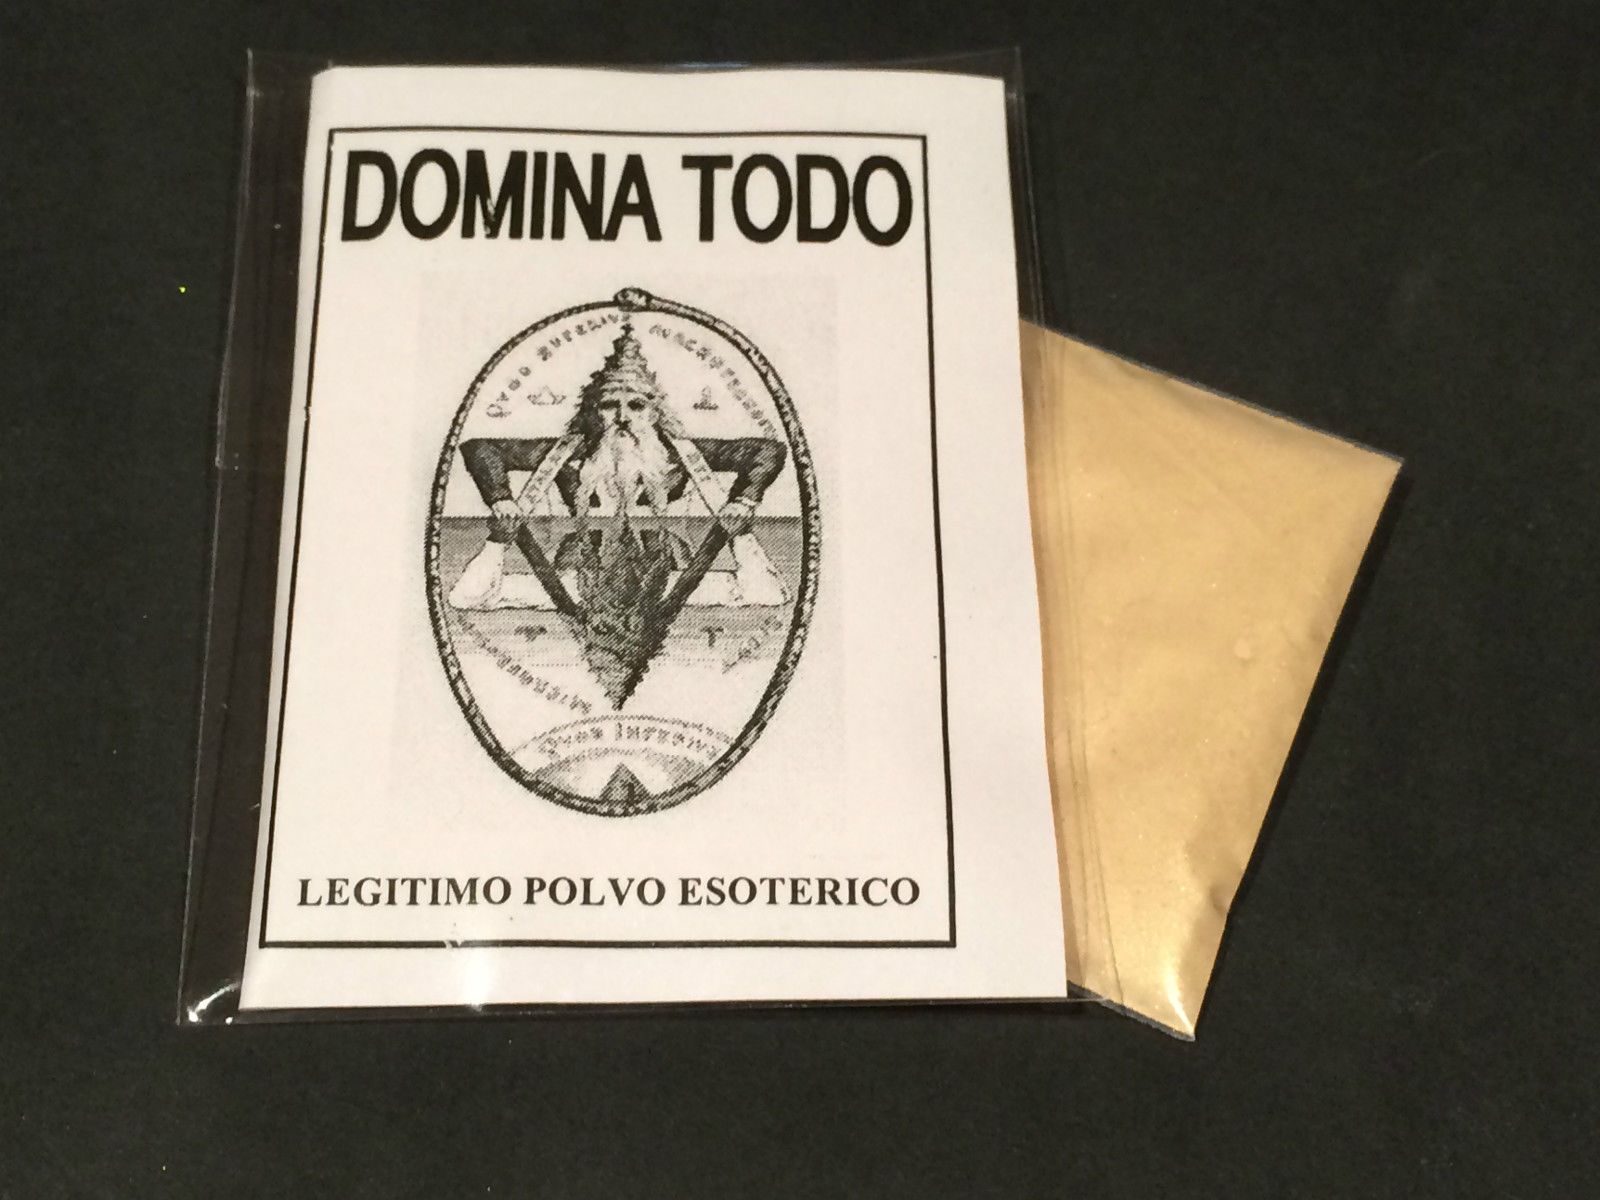  LEGITIMO POLVO ESOTERICO ESPECIAL " DOMINA TODO "